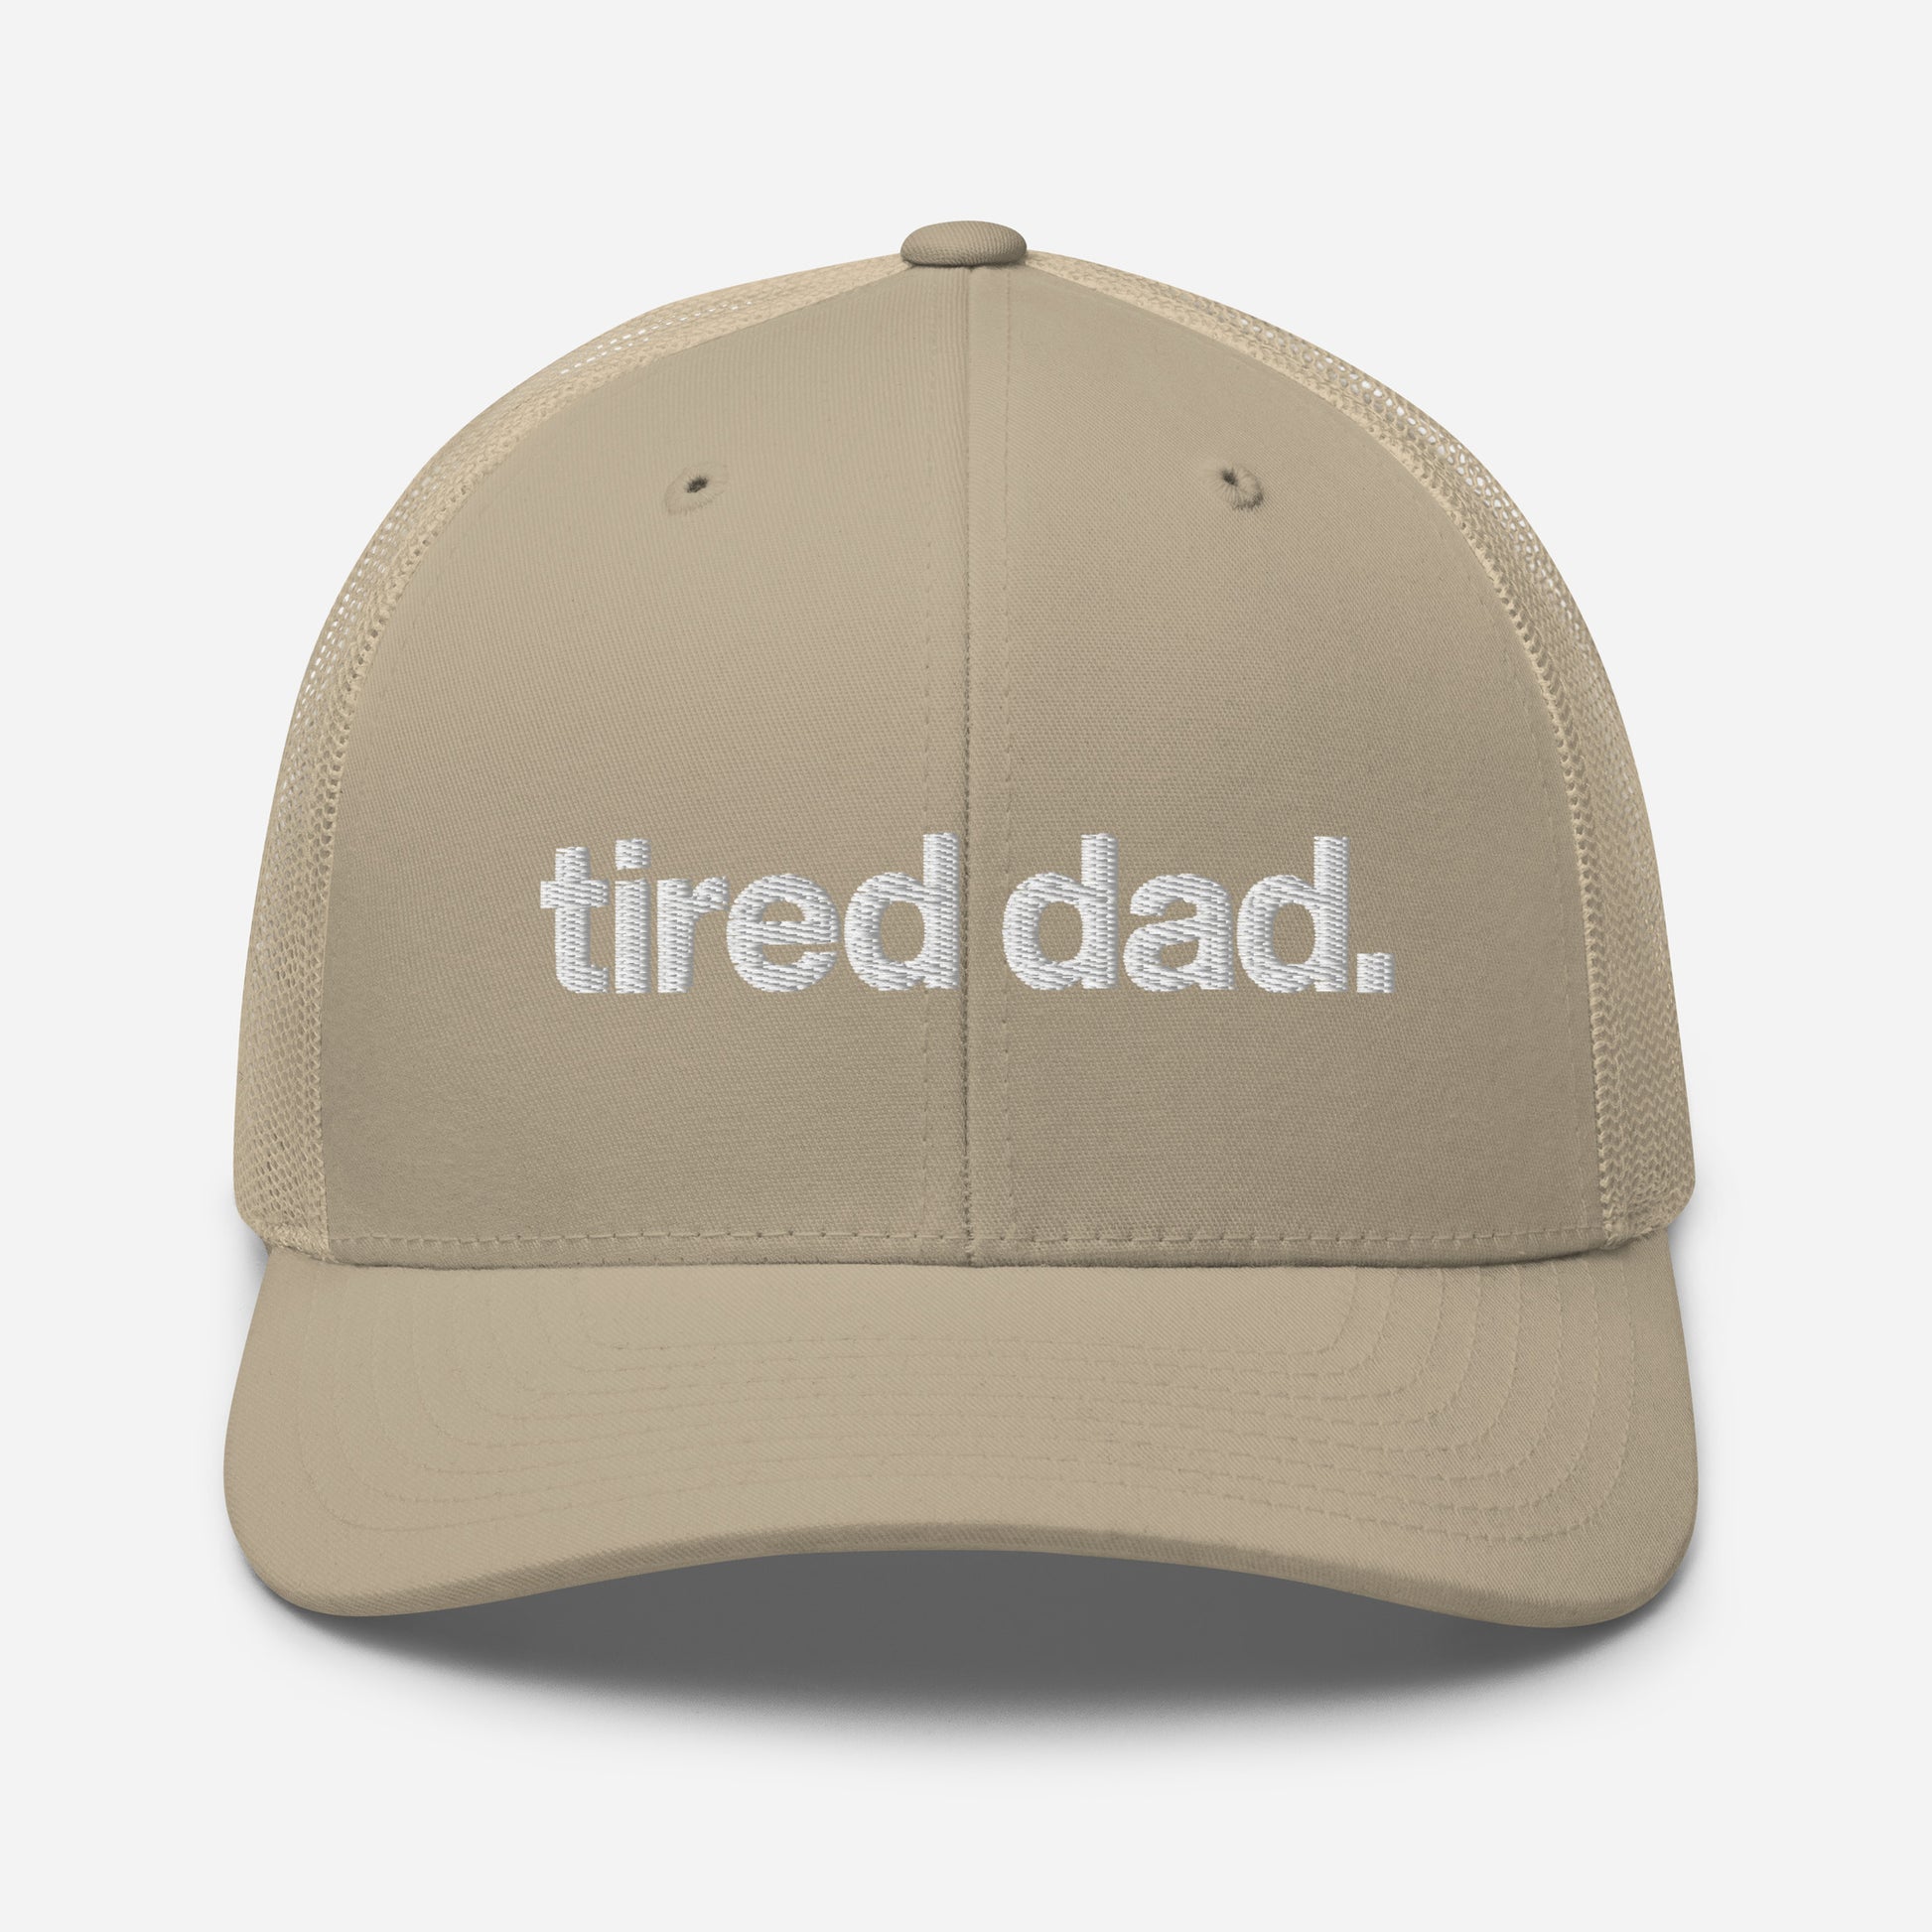 Ass Voorspellen vriendelijke groet tired dad. trucker hat – Tired Dad.